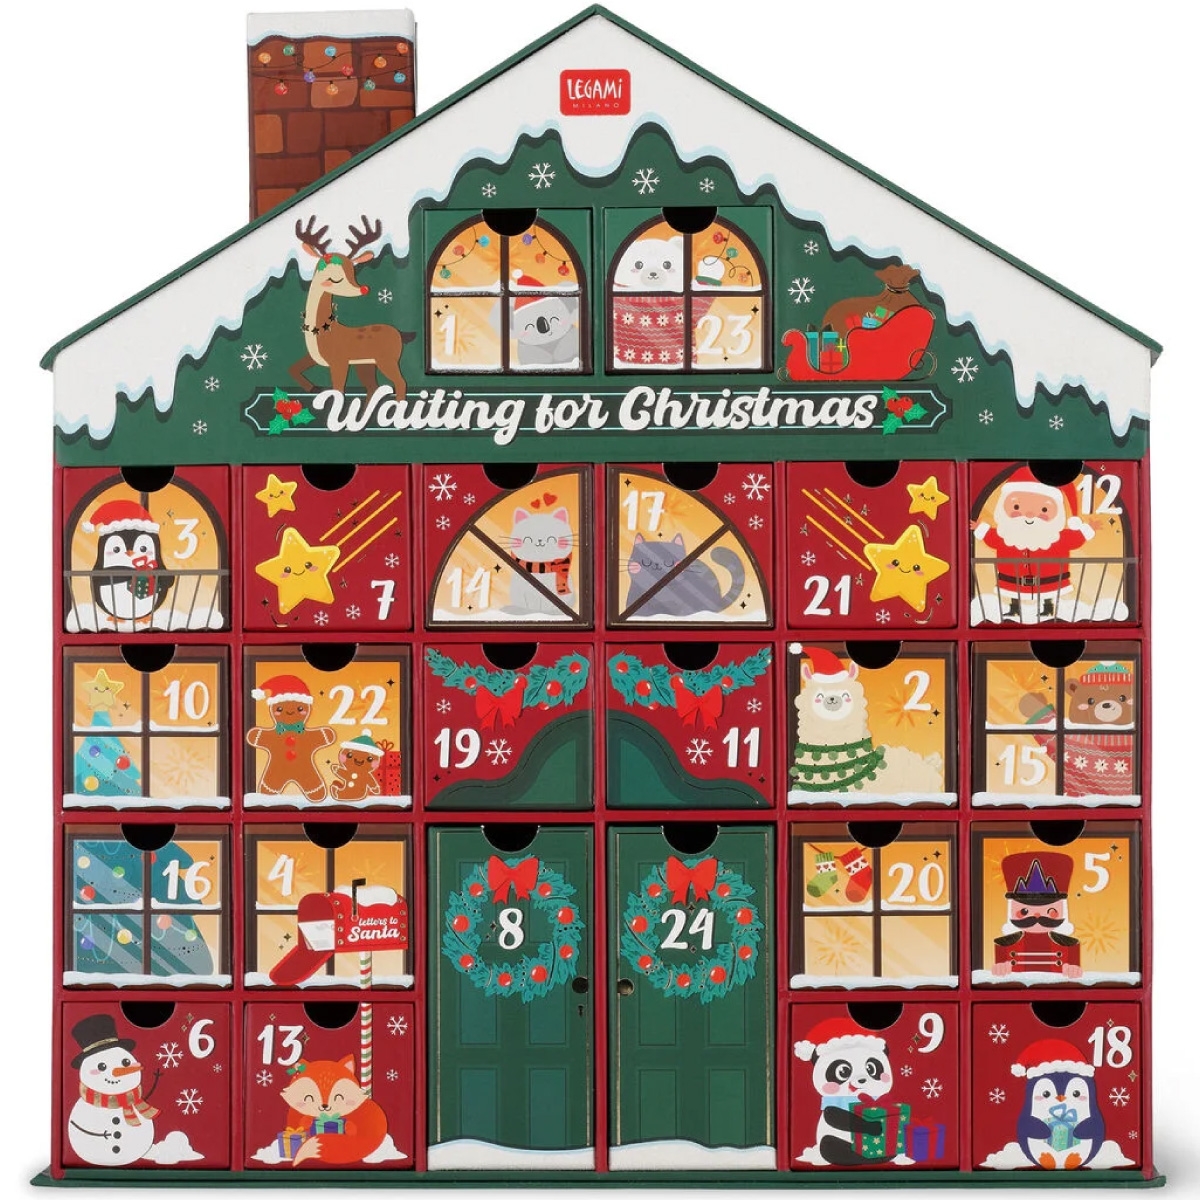 LEGAMI Calendario Dell'avvento - Waiting For Christmas a 35,99 €